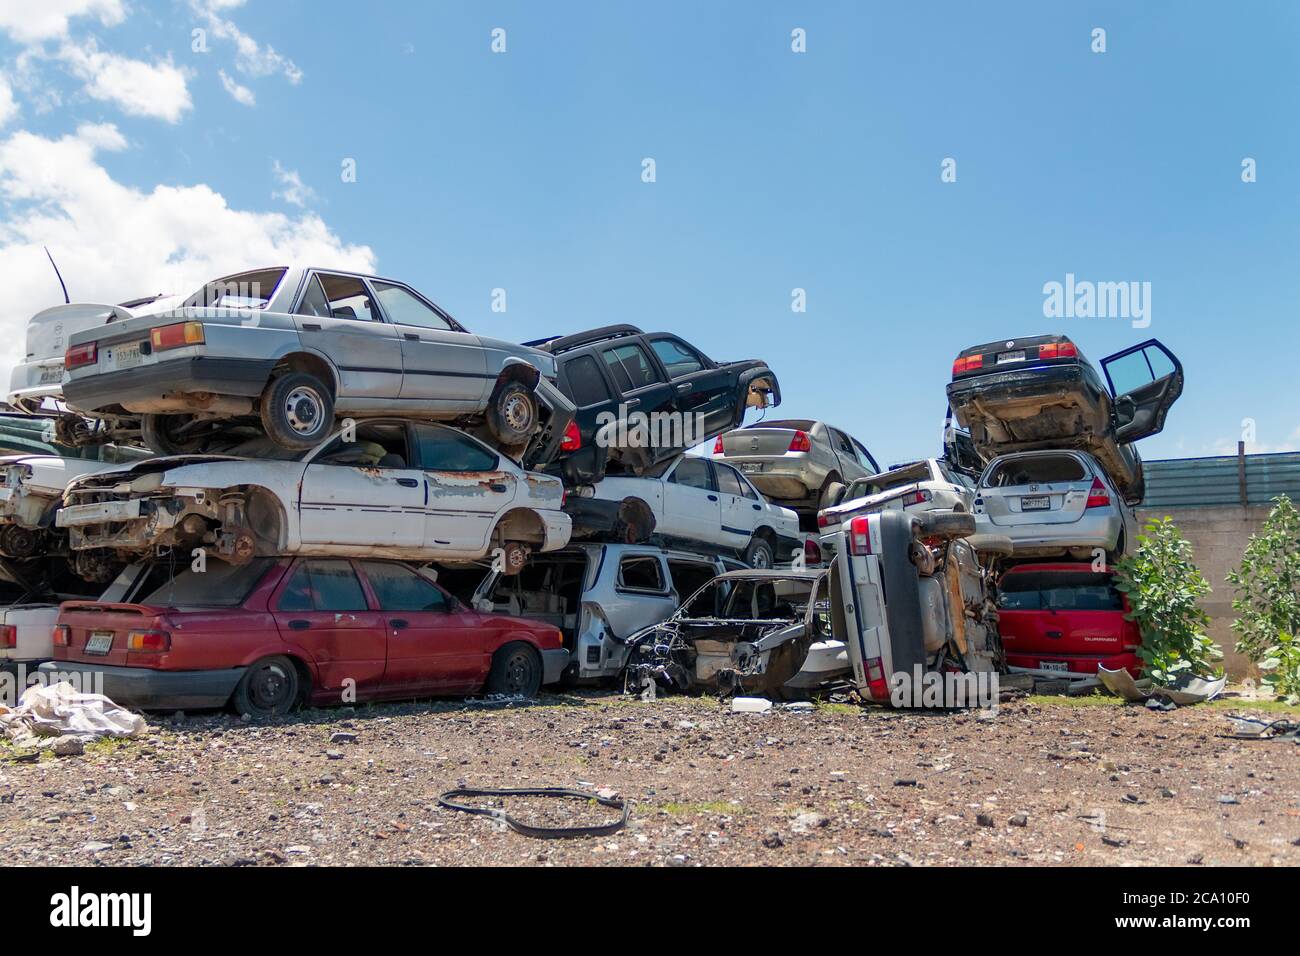 Vieilles voitures endommagées sur le chantier en attente de recyclage à Mexico. Mexique Banque D'Images